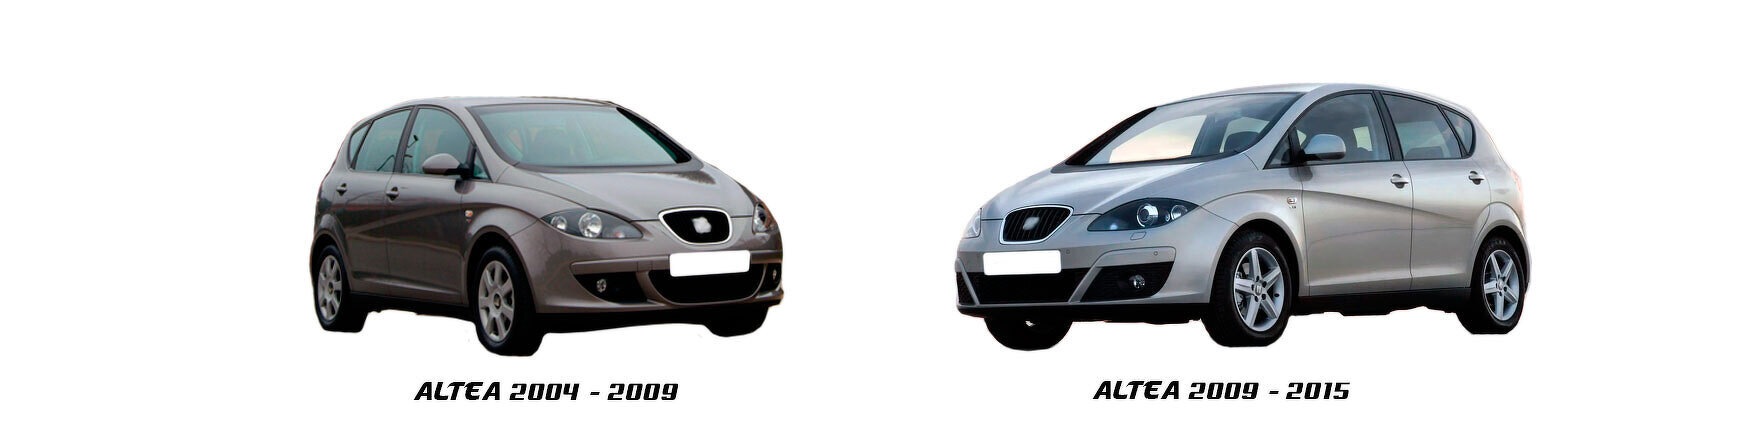 seat altea 2004 2005 2006 2007 2008 2009 mecanica carroceria